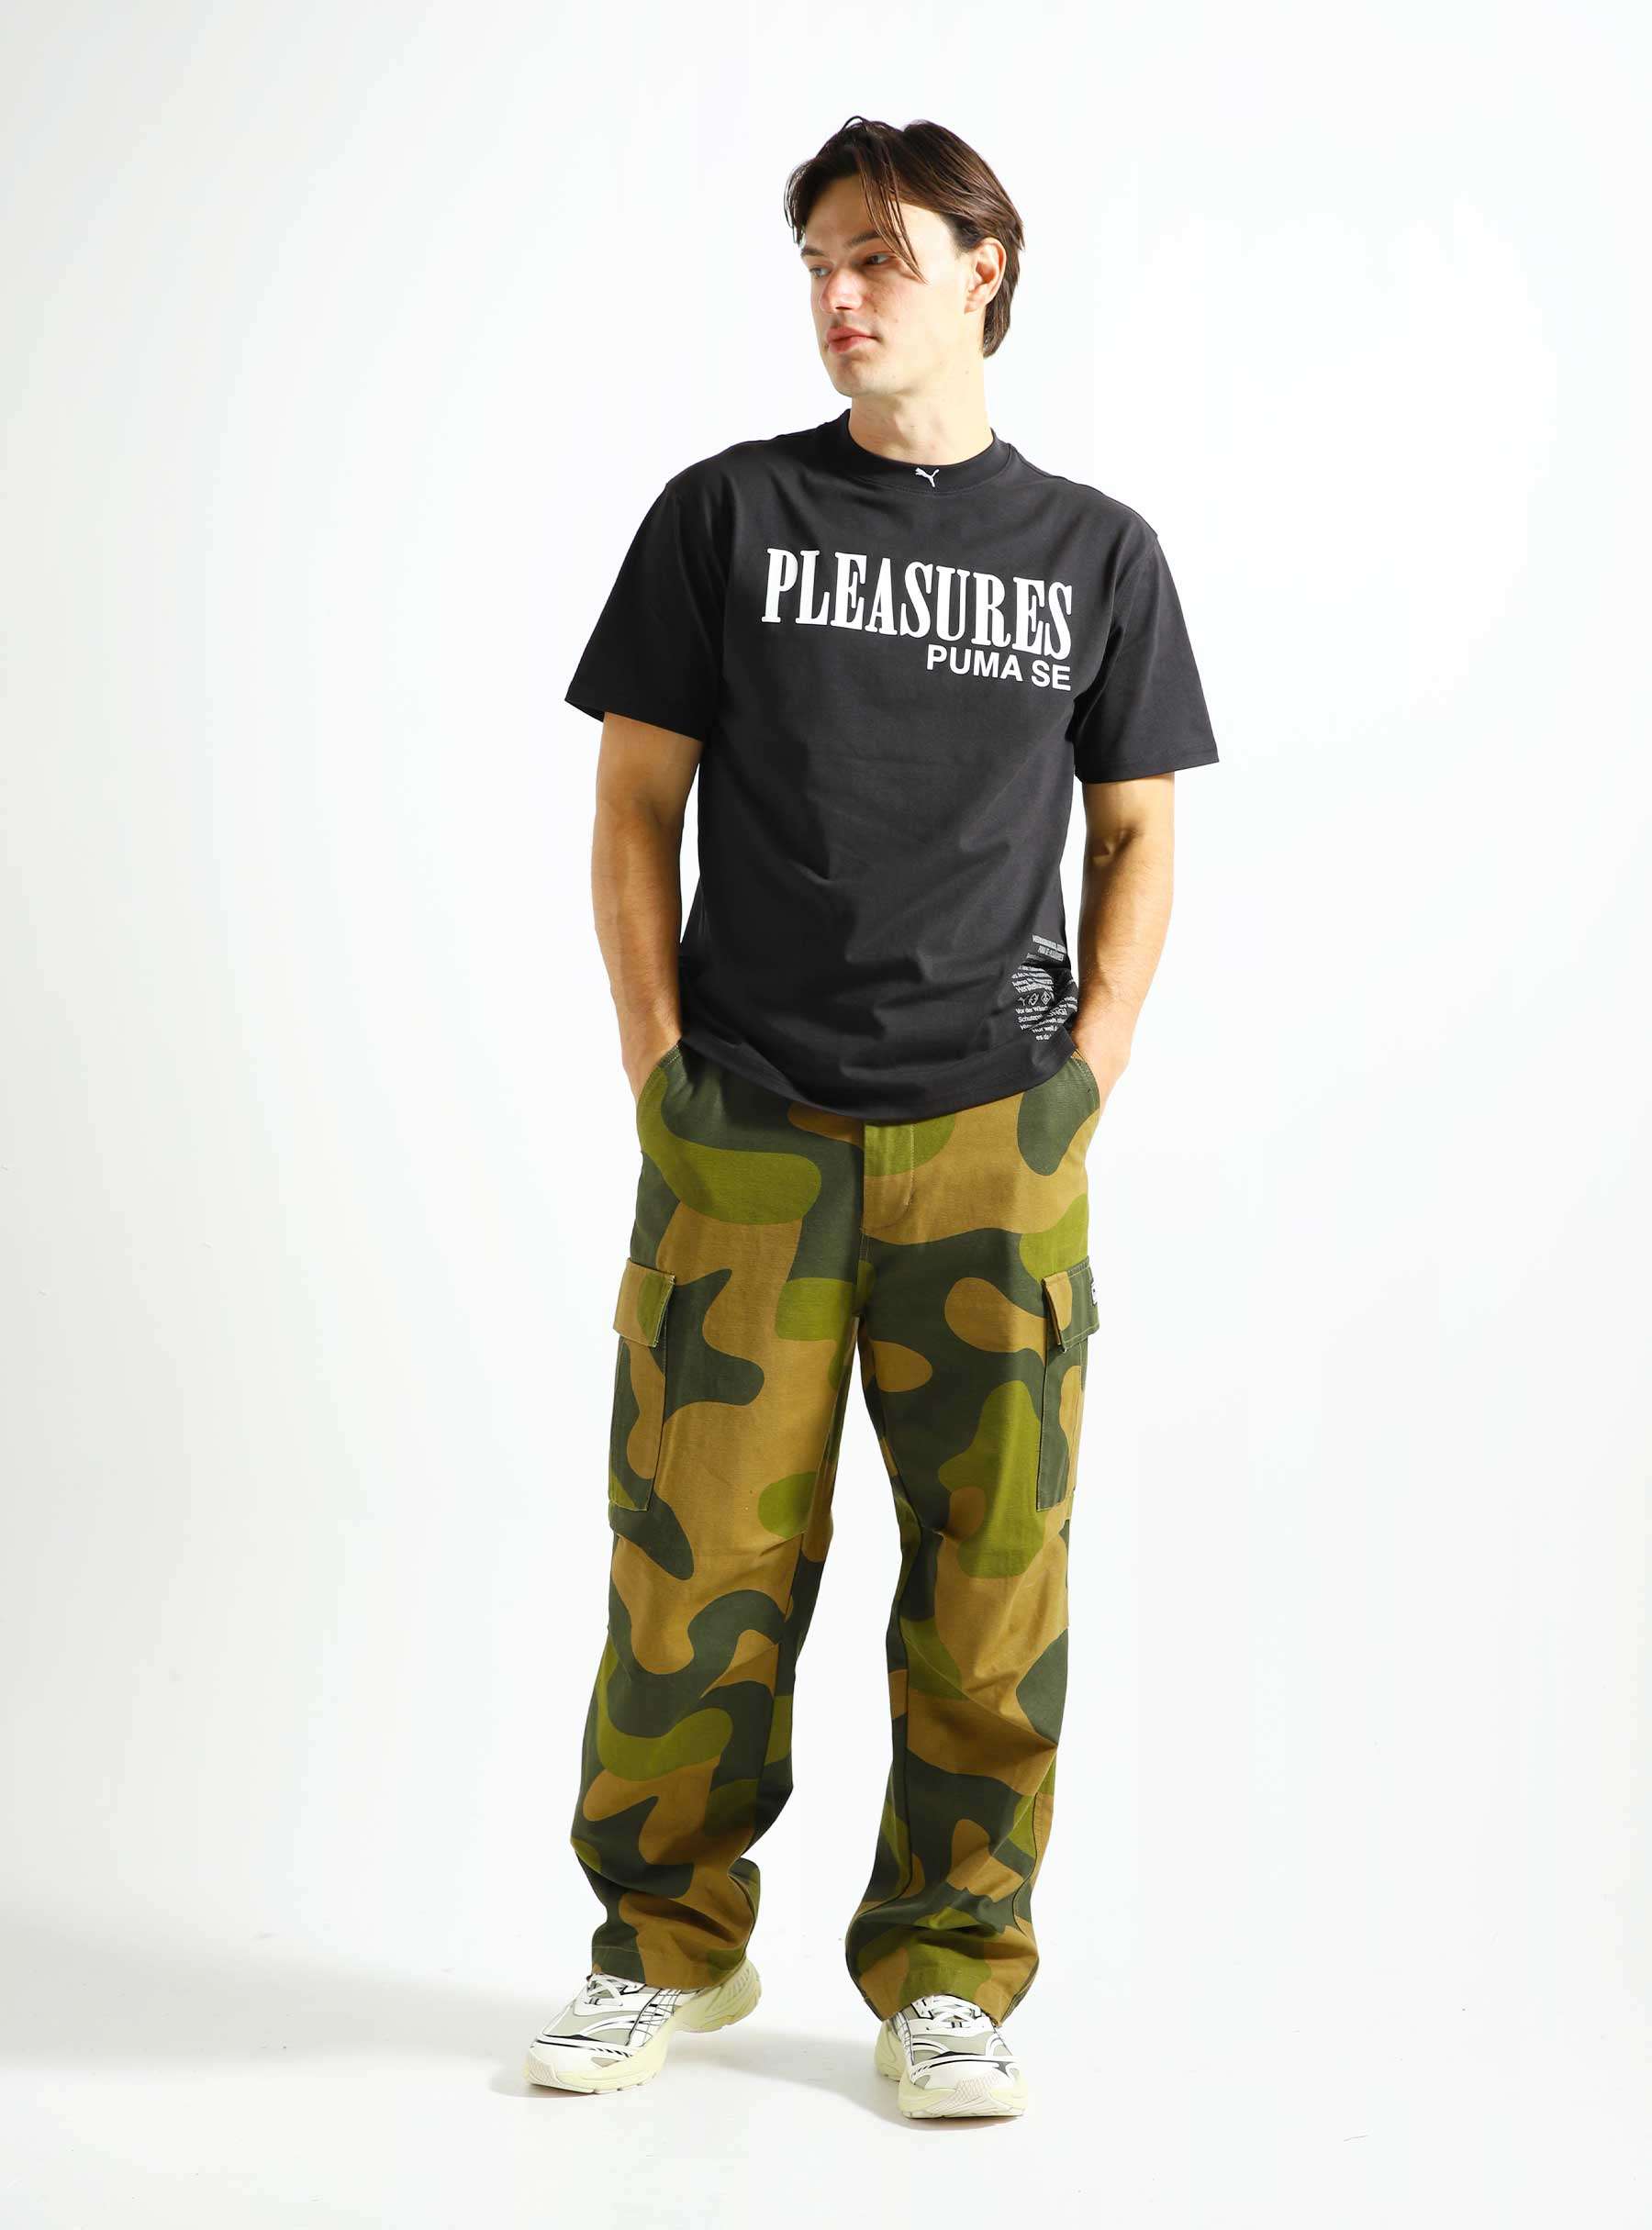 Puma x Pleasures Typo T-shirt Black 620878-01